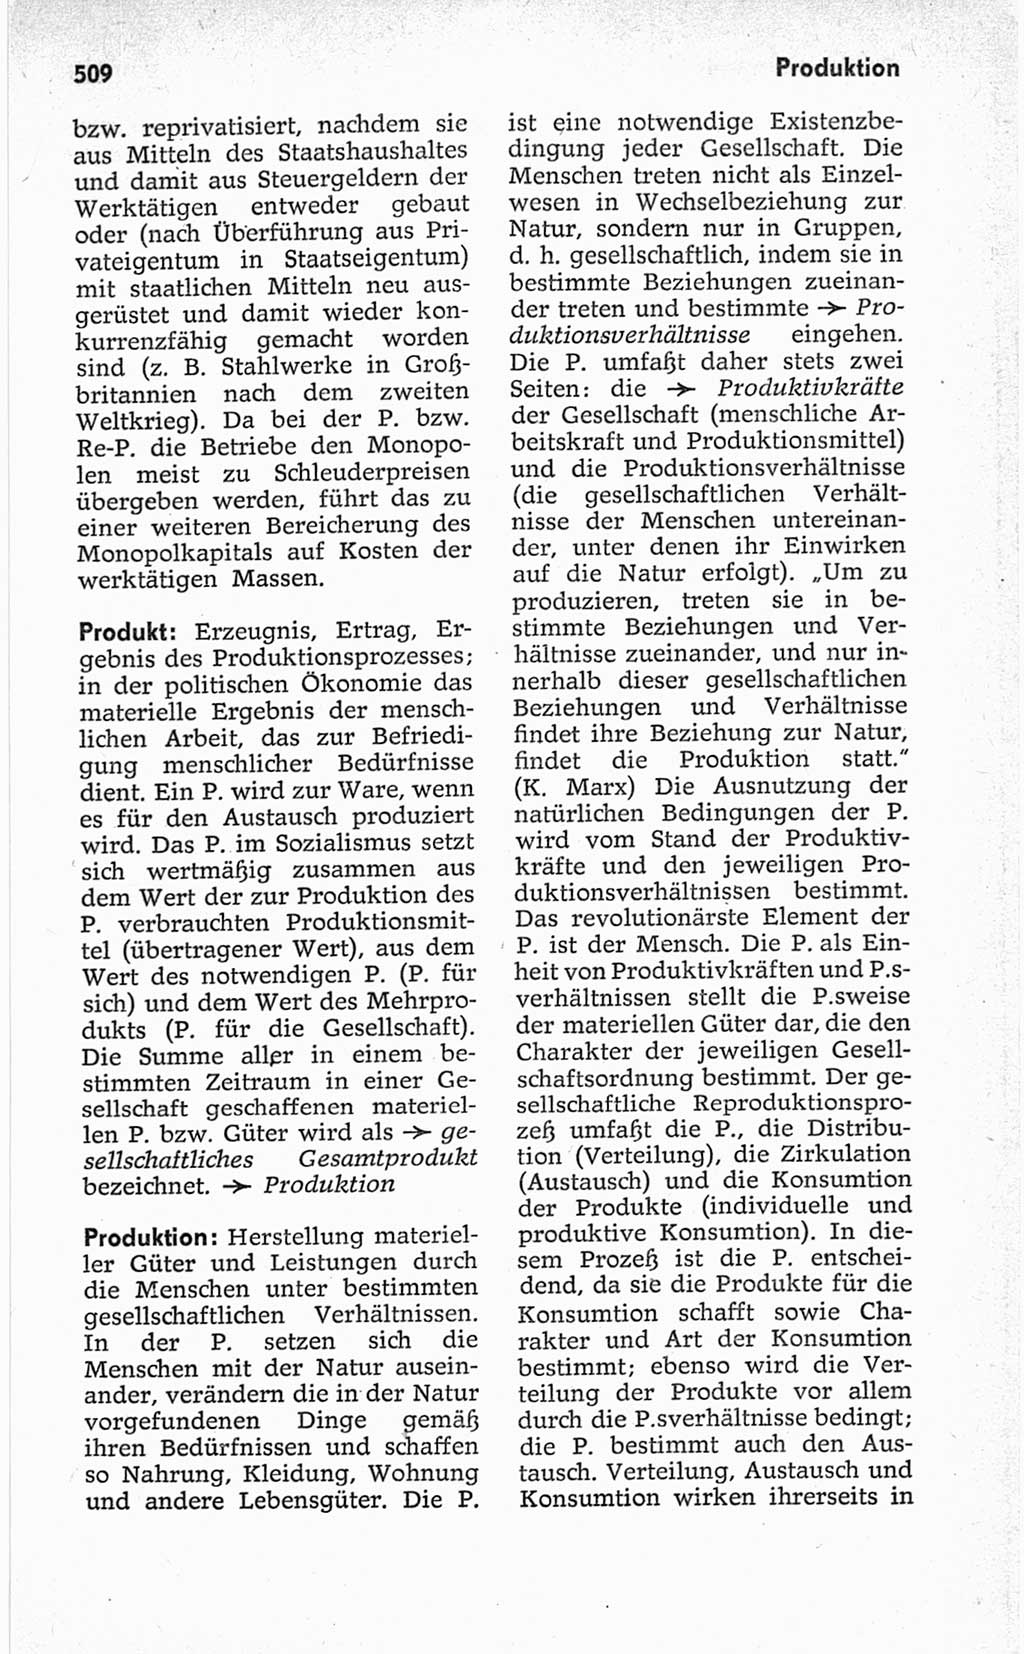 Kleines politisches Wörterbuch [Deutsche Demokratische Republik (DDR)] 1967, Seite 509 (Kl. pol. Wb. DDR 1967, S. 509)